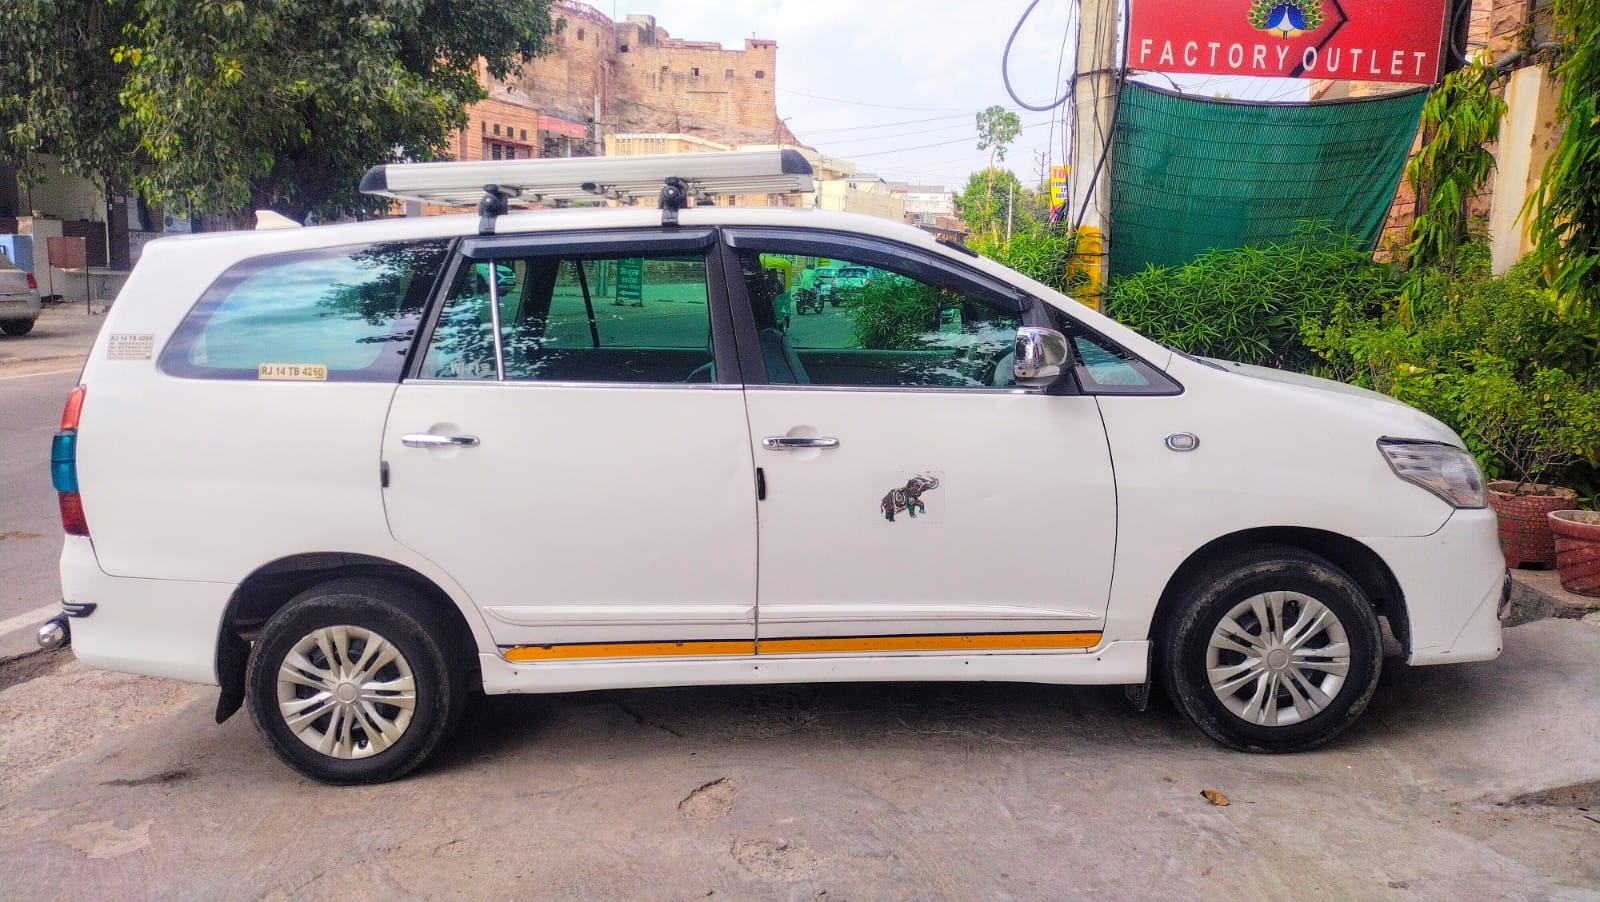 jodhpur cabs, taxi service in jodhpur, car rental in jodhpur, jodhpur sightseeing tour, car rental in jaipur, taxi service in jaipur, taxi service in jaisalmer